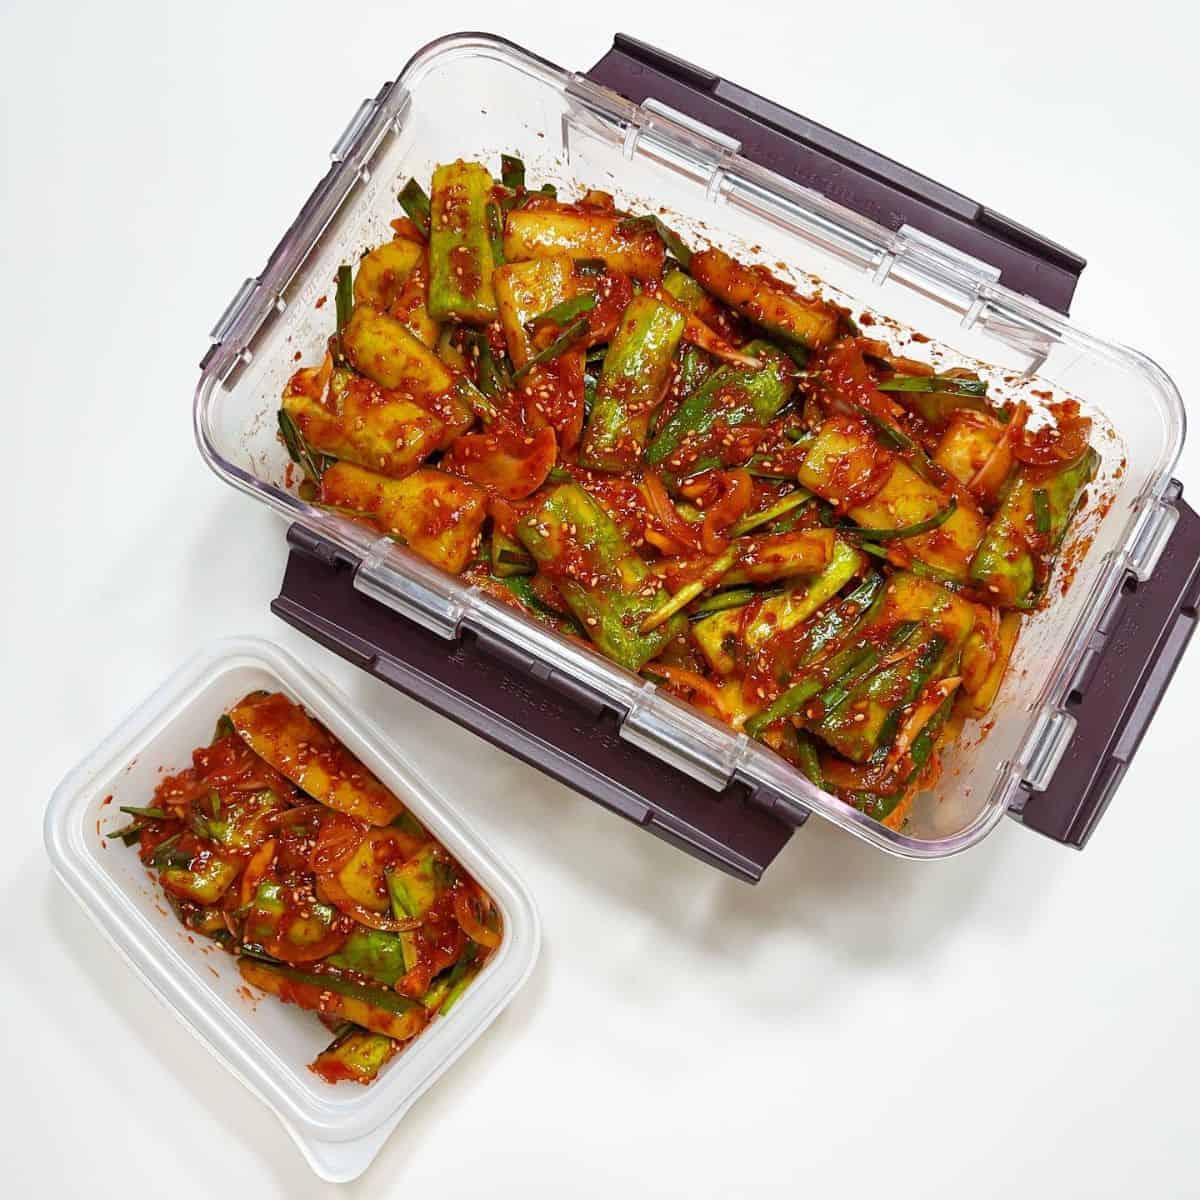 cucumber kimchi container